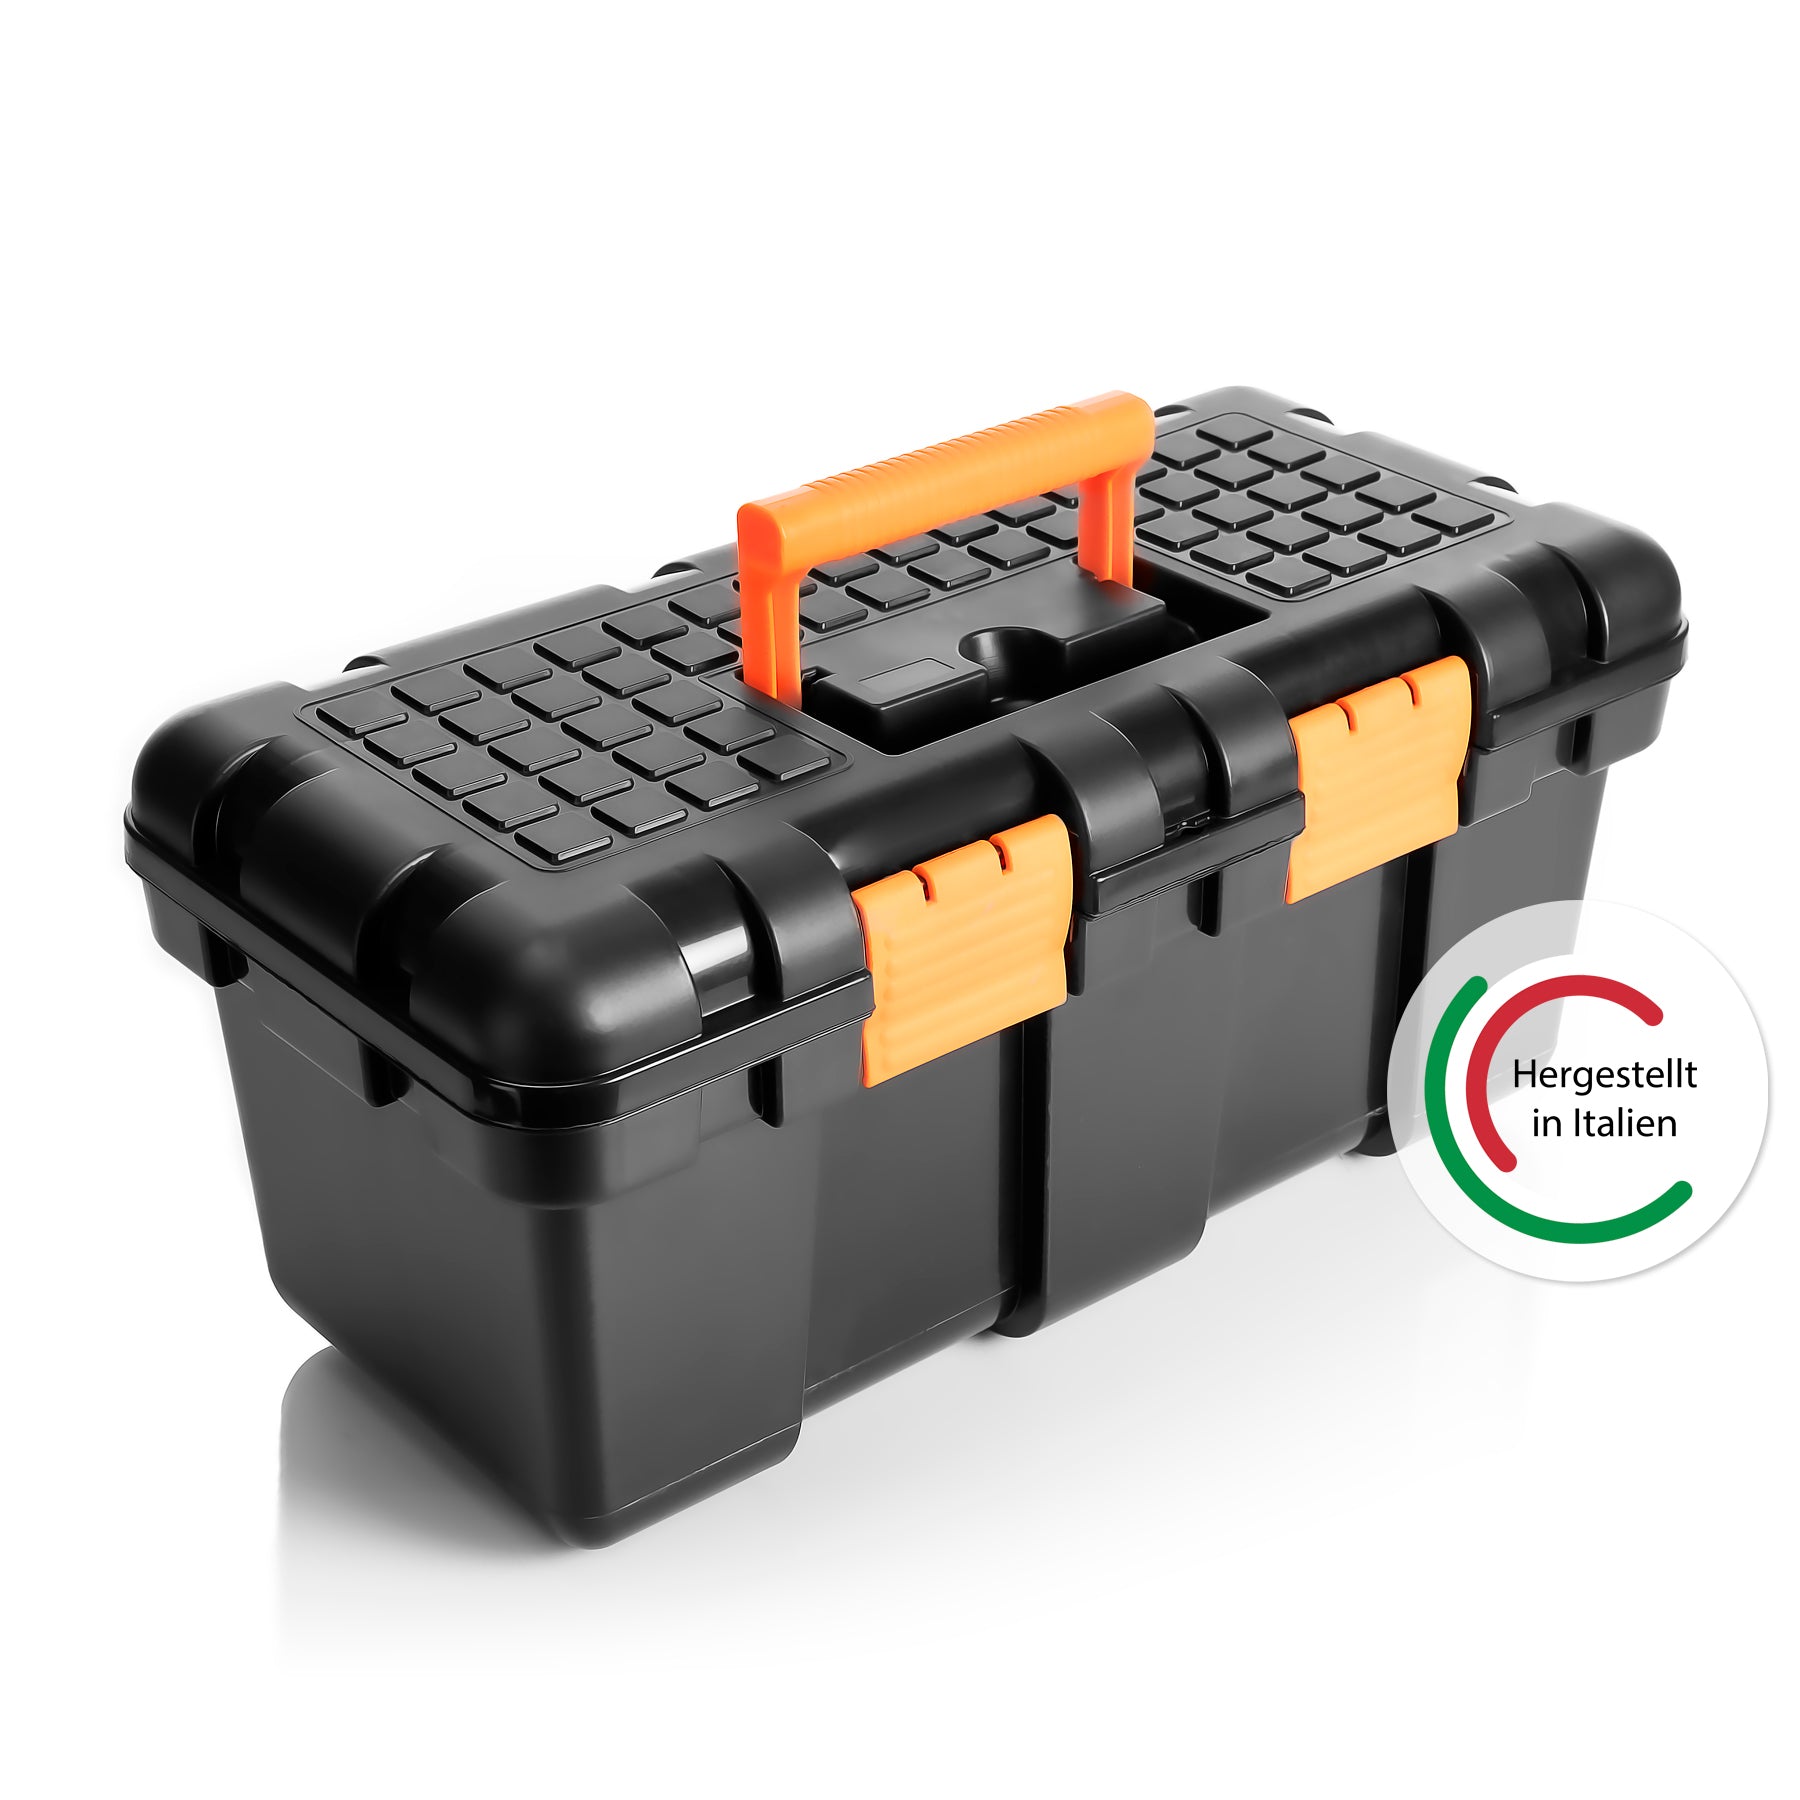 Werkzeugkoffer groß aus Hart-Kunststoff - 50x25x23,5cm - Werkzeugkiste mit herausnehmbarer Innenablage - Toolbox groß Werkzeugkasten Werkzeug Box für Heim- & Handwerker - Made in EU